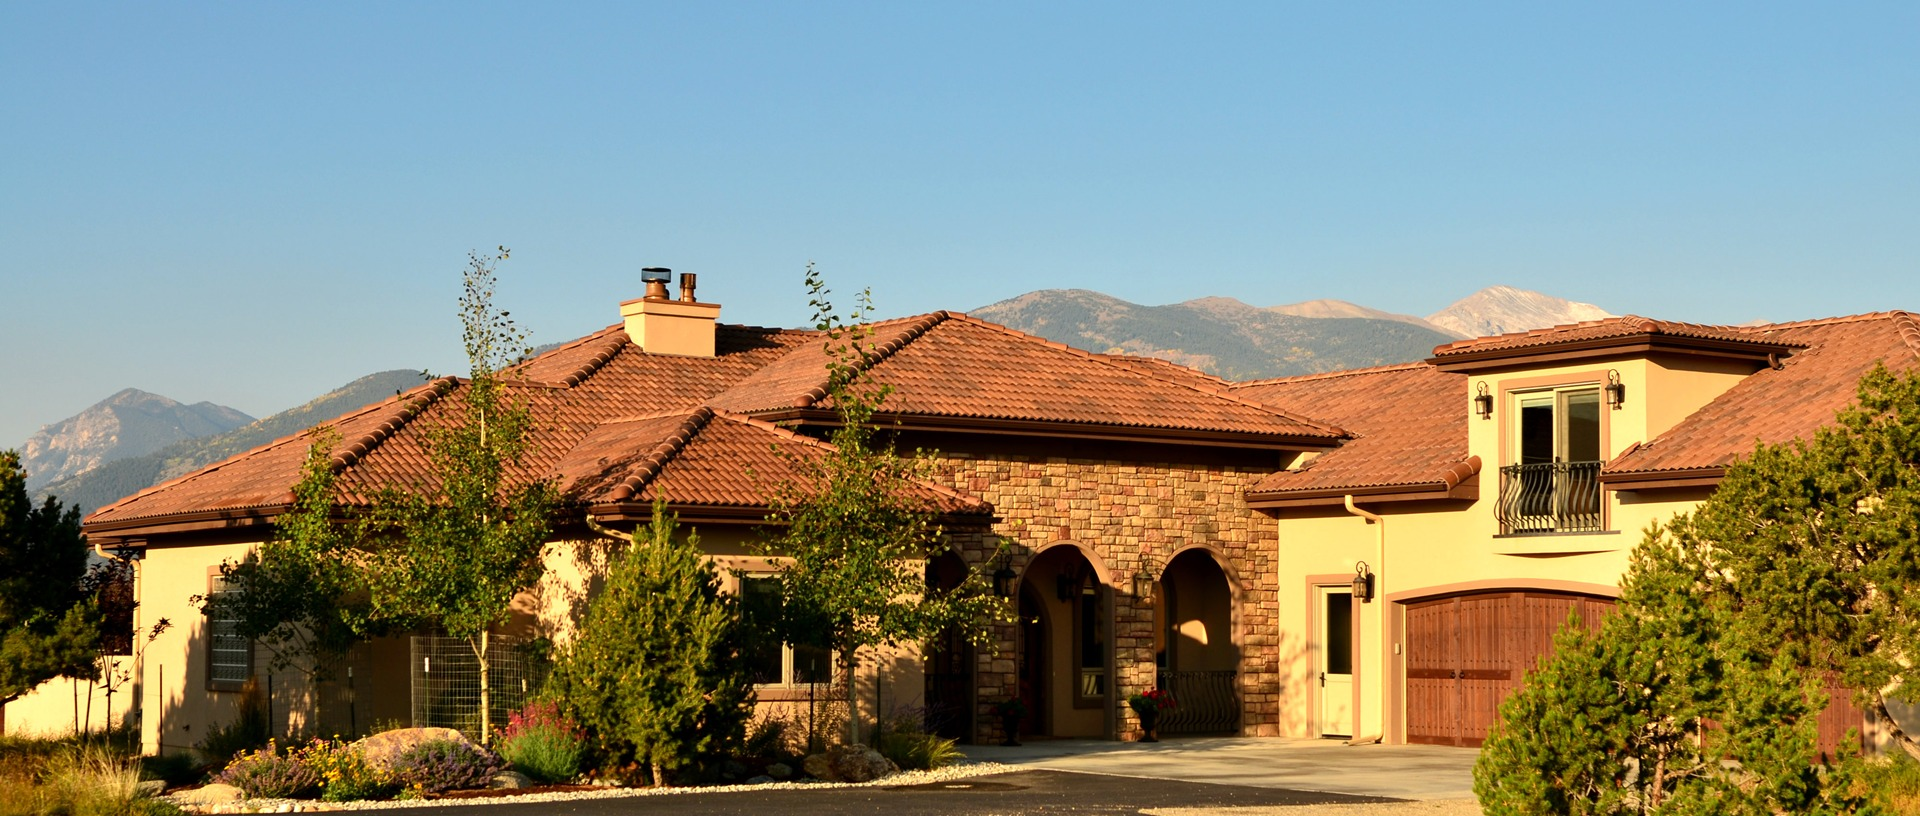 Defurio Custom Homes, Inc. - Buena Vista, CO